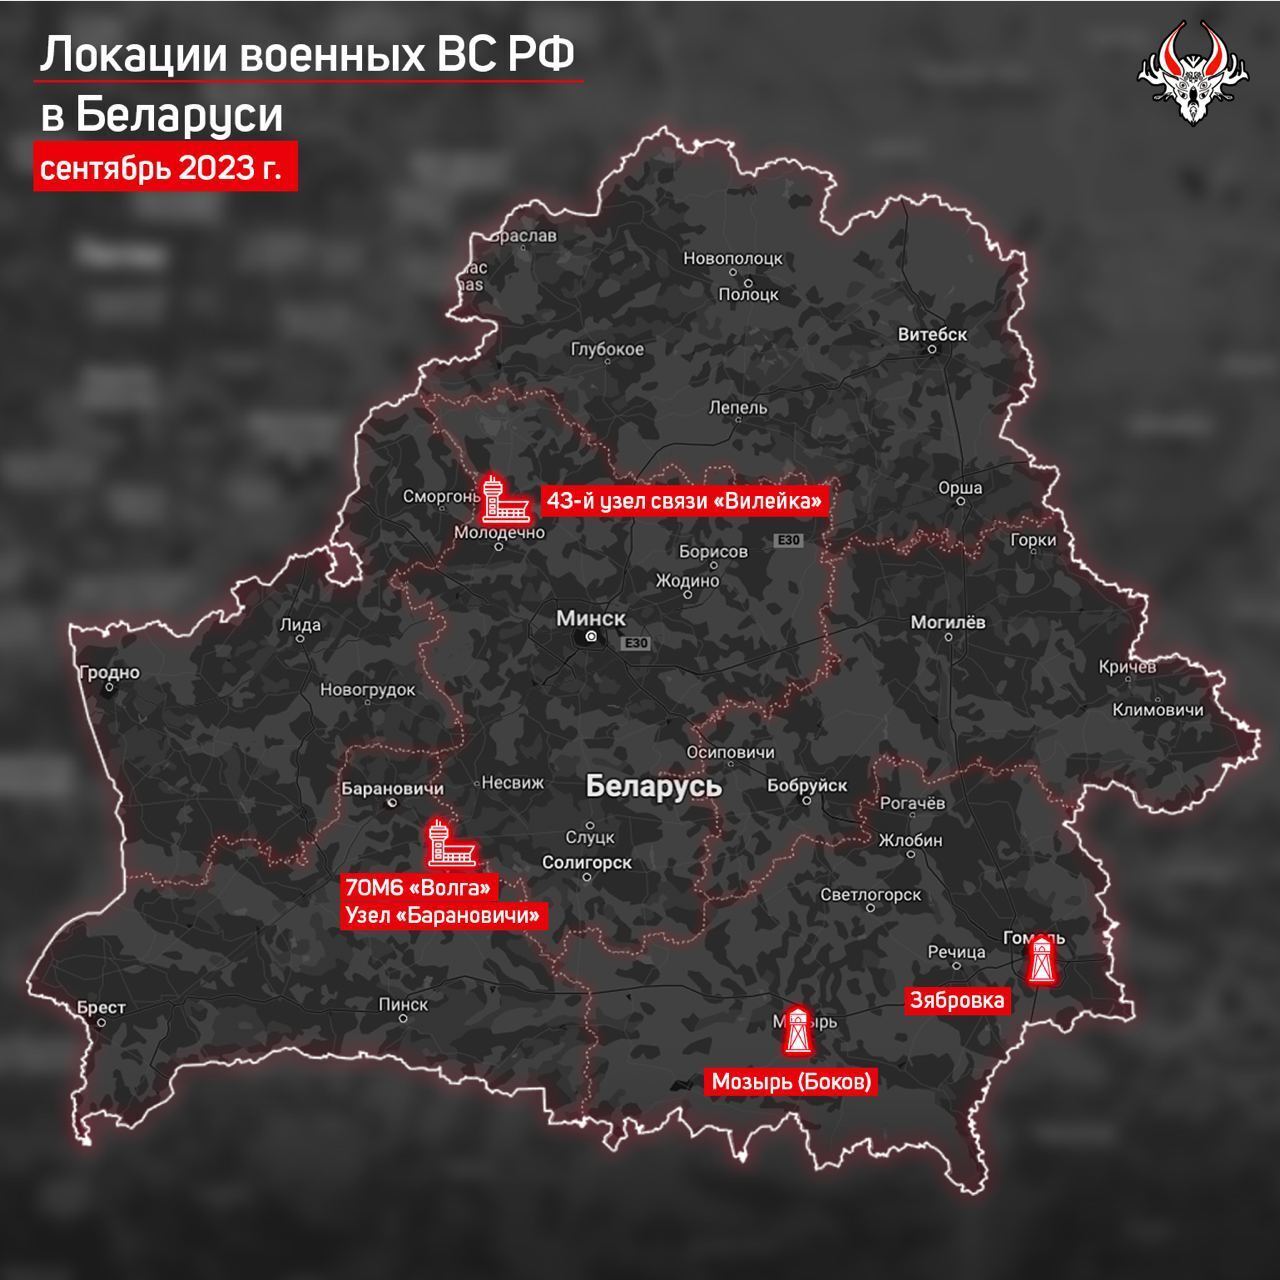 Сколько российских военных и наемников ППК "Вагнер" остаются в Беларуси и чем они занимаются: СМИ раскрыли подробности